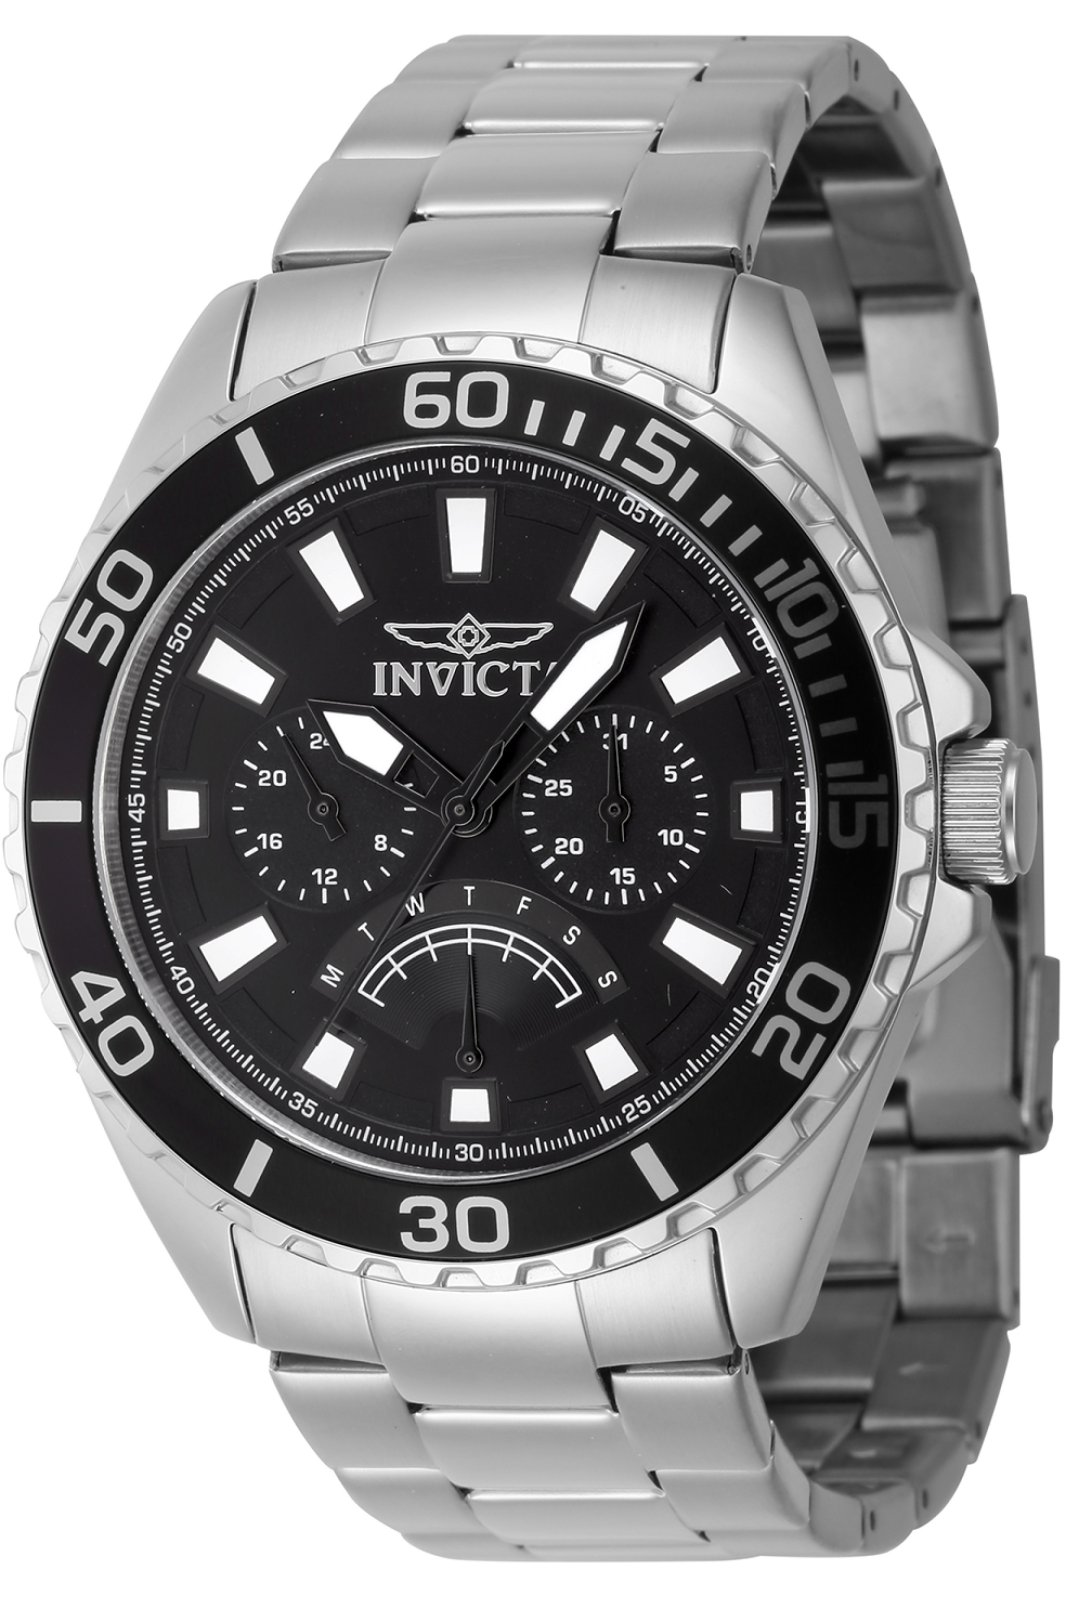 Invicta Pro Diver 46898 Men's Quartz Watch - 46mm